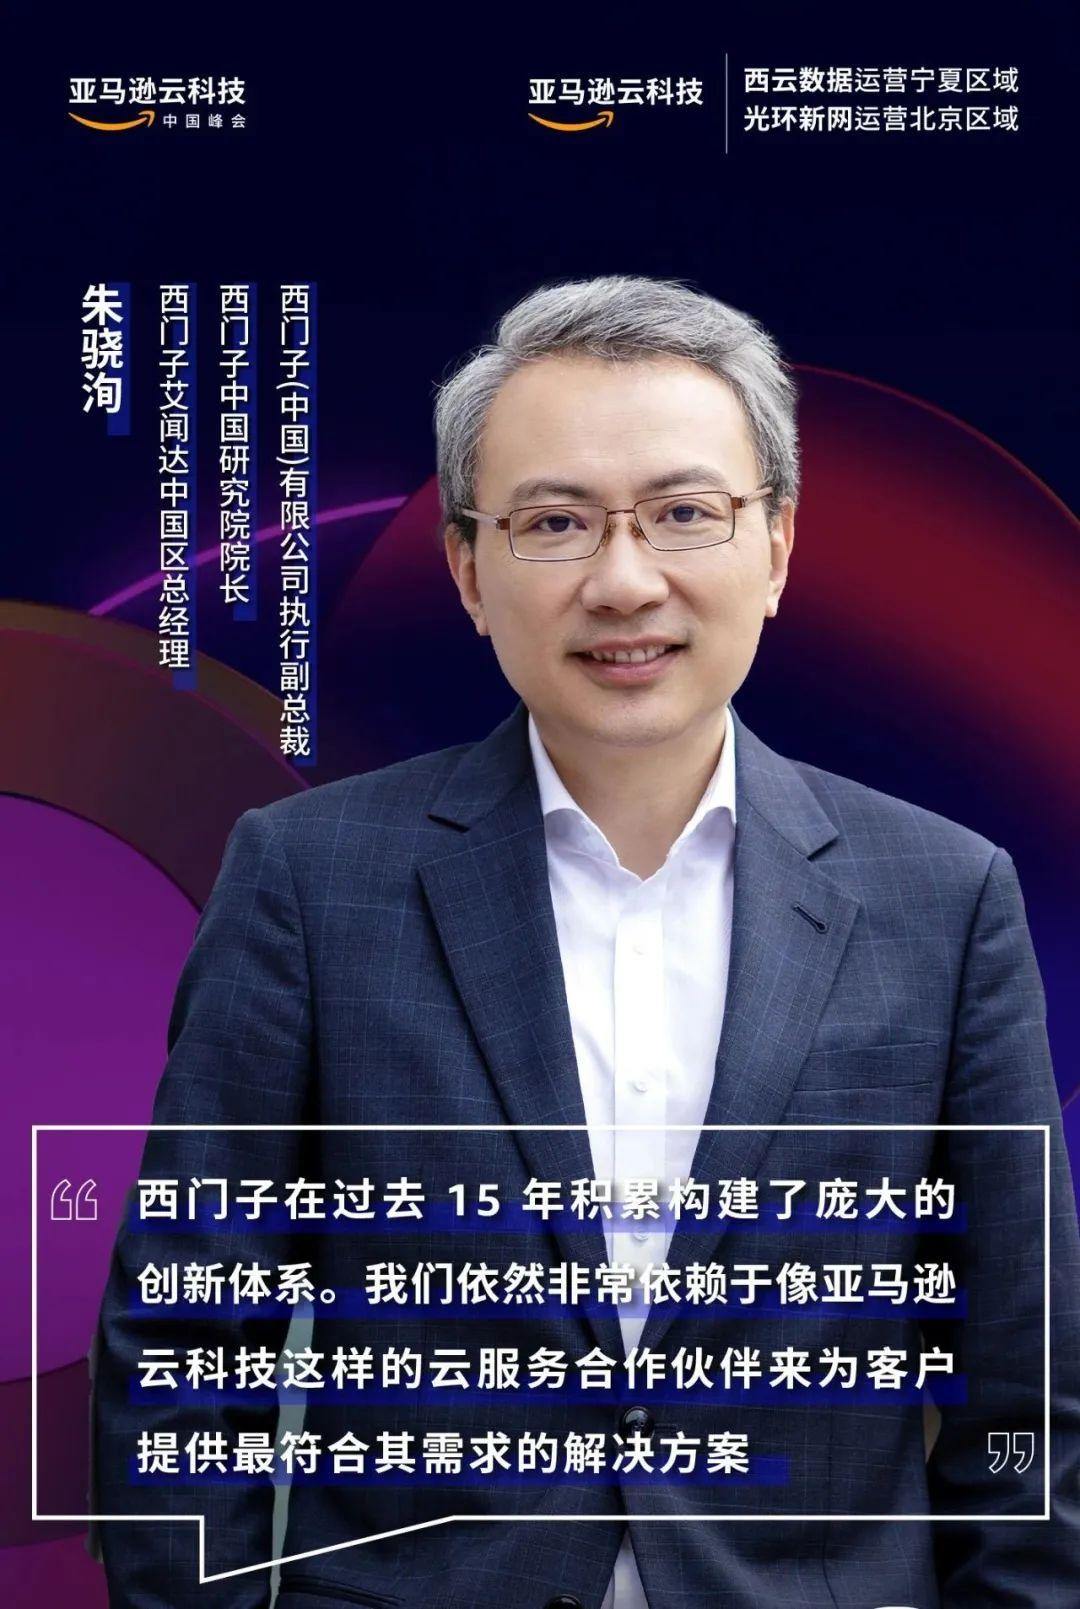 阿迪达斯大中华区及中国数字信息技术副总裁周大伟分享了阿迪达斯基于